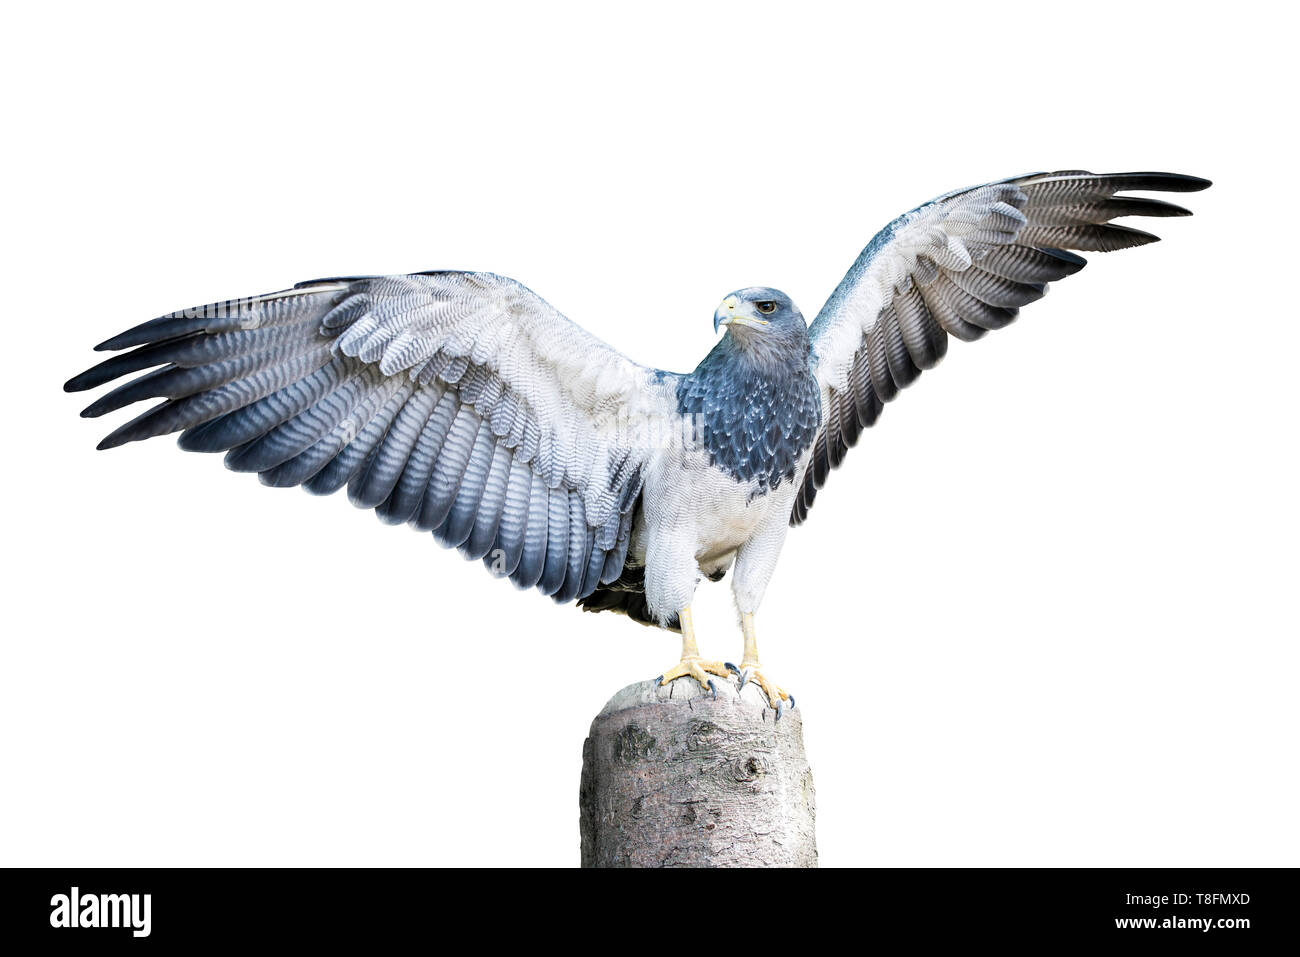 Aguja, un oiseau de la famille hawk debout sur une souche d'arbre mort, avec sur le point de prendre son envol. Isolé sur blanc. Chemin de détourage inclus. Banque D'Images